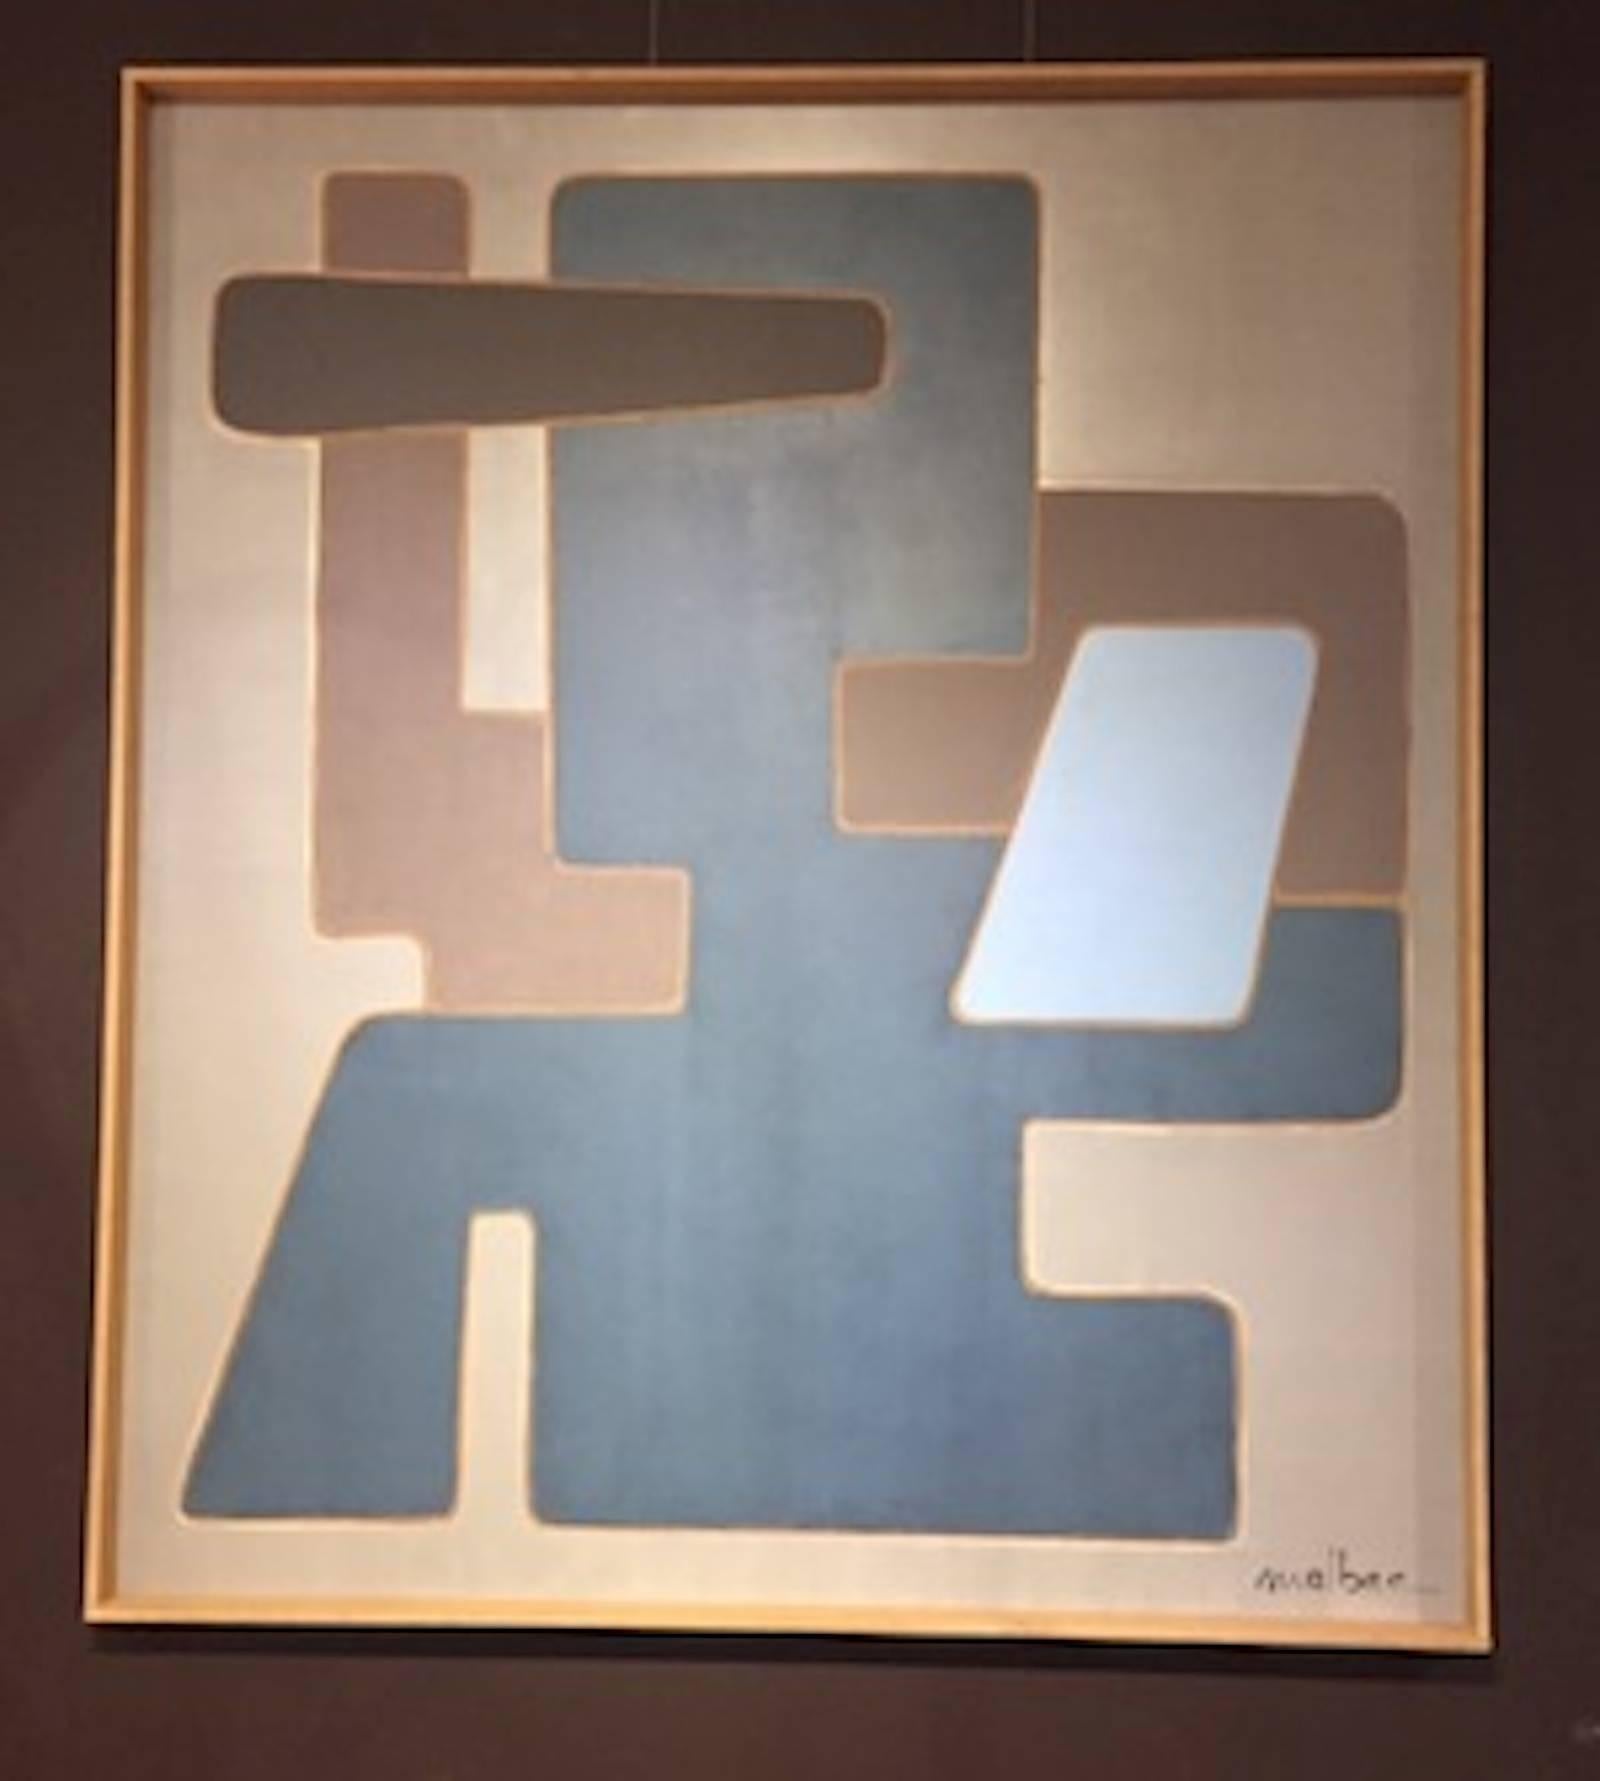 Grande peinture abstraite contemporaine de l'artiste français Pierre Malbec. 
Fond gris clair avec des abstractions de bleu moyen et de taupe. 
La peinture mesure plus d'un mètre cinquante et est réalisée à l'acrylique sur carton.  Il est encadré